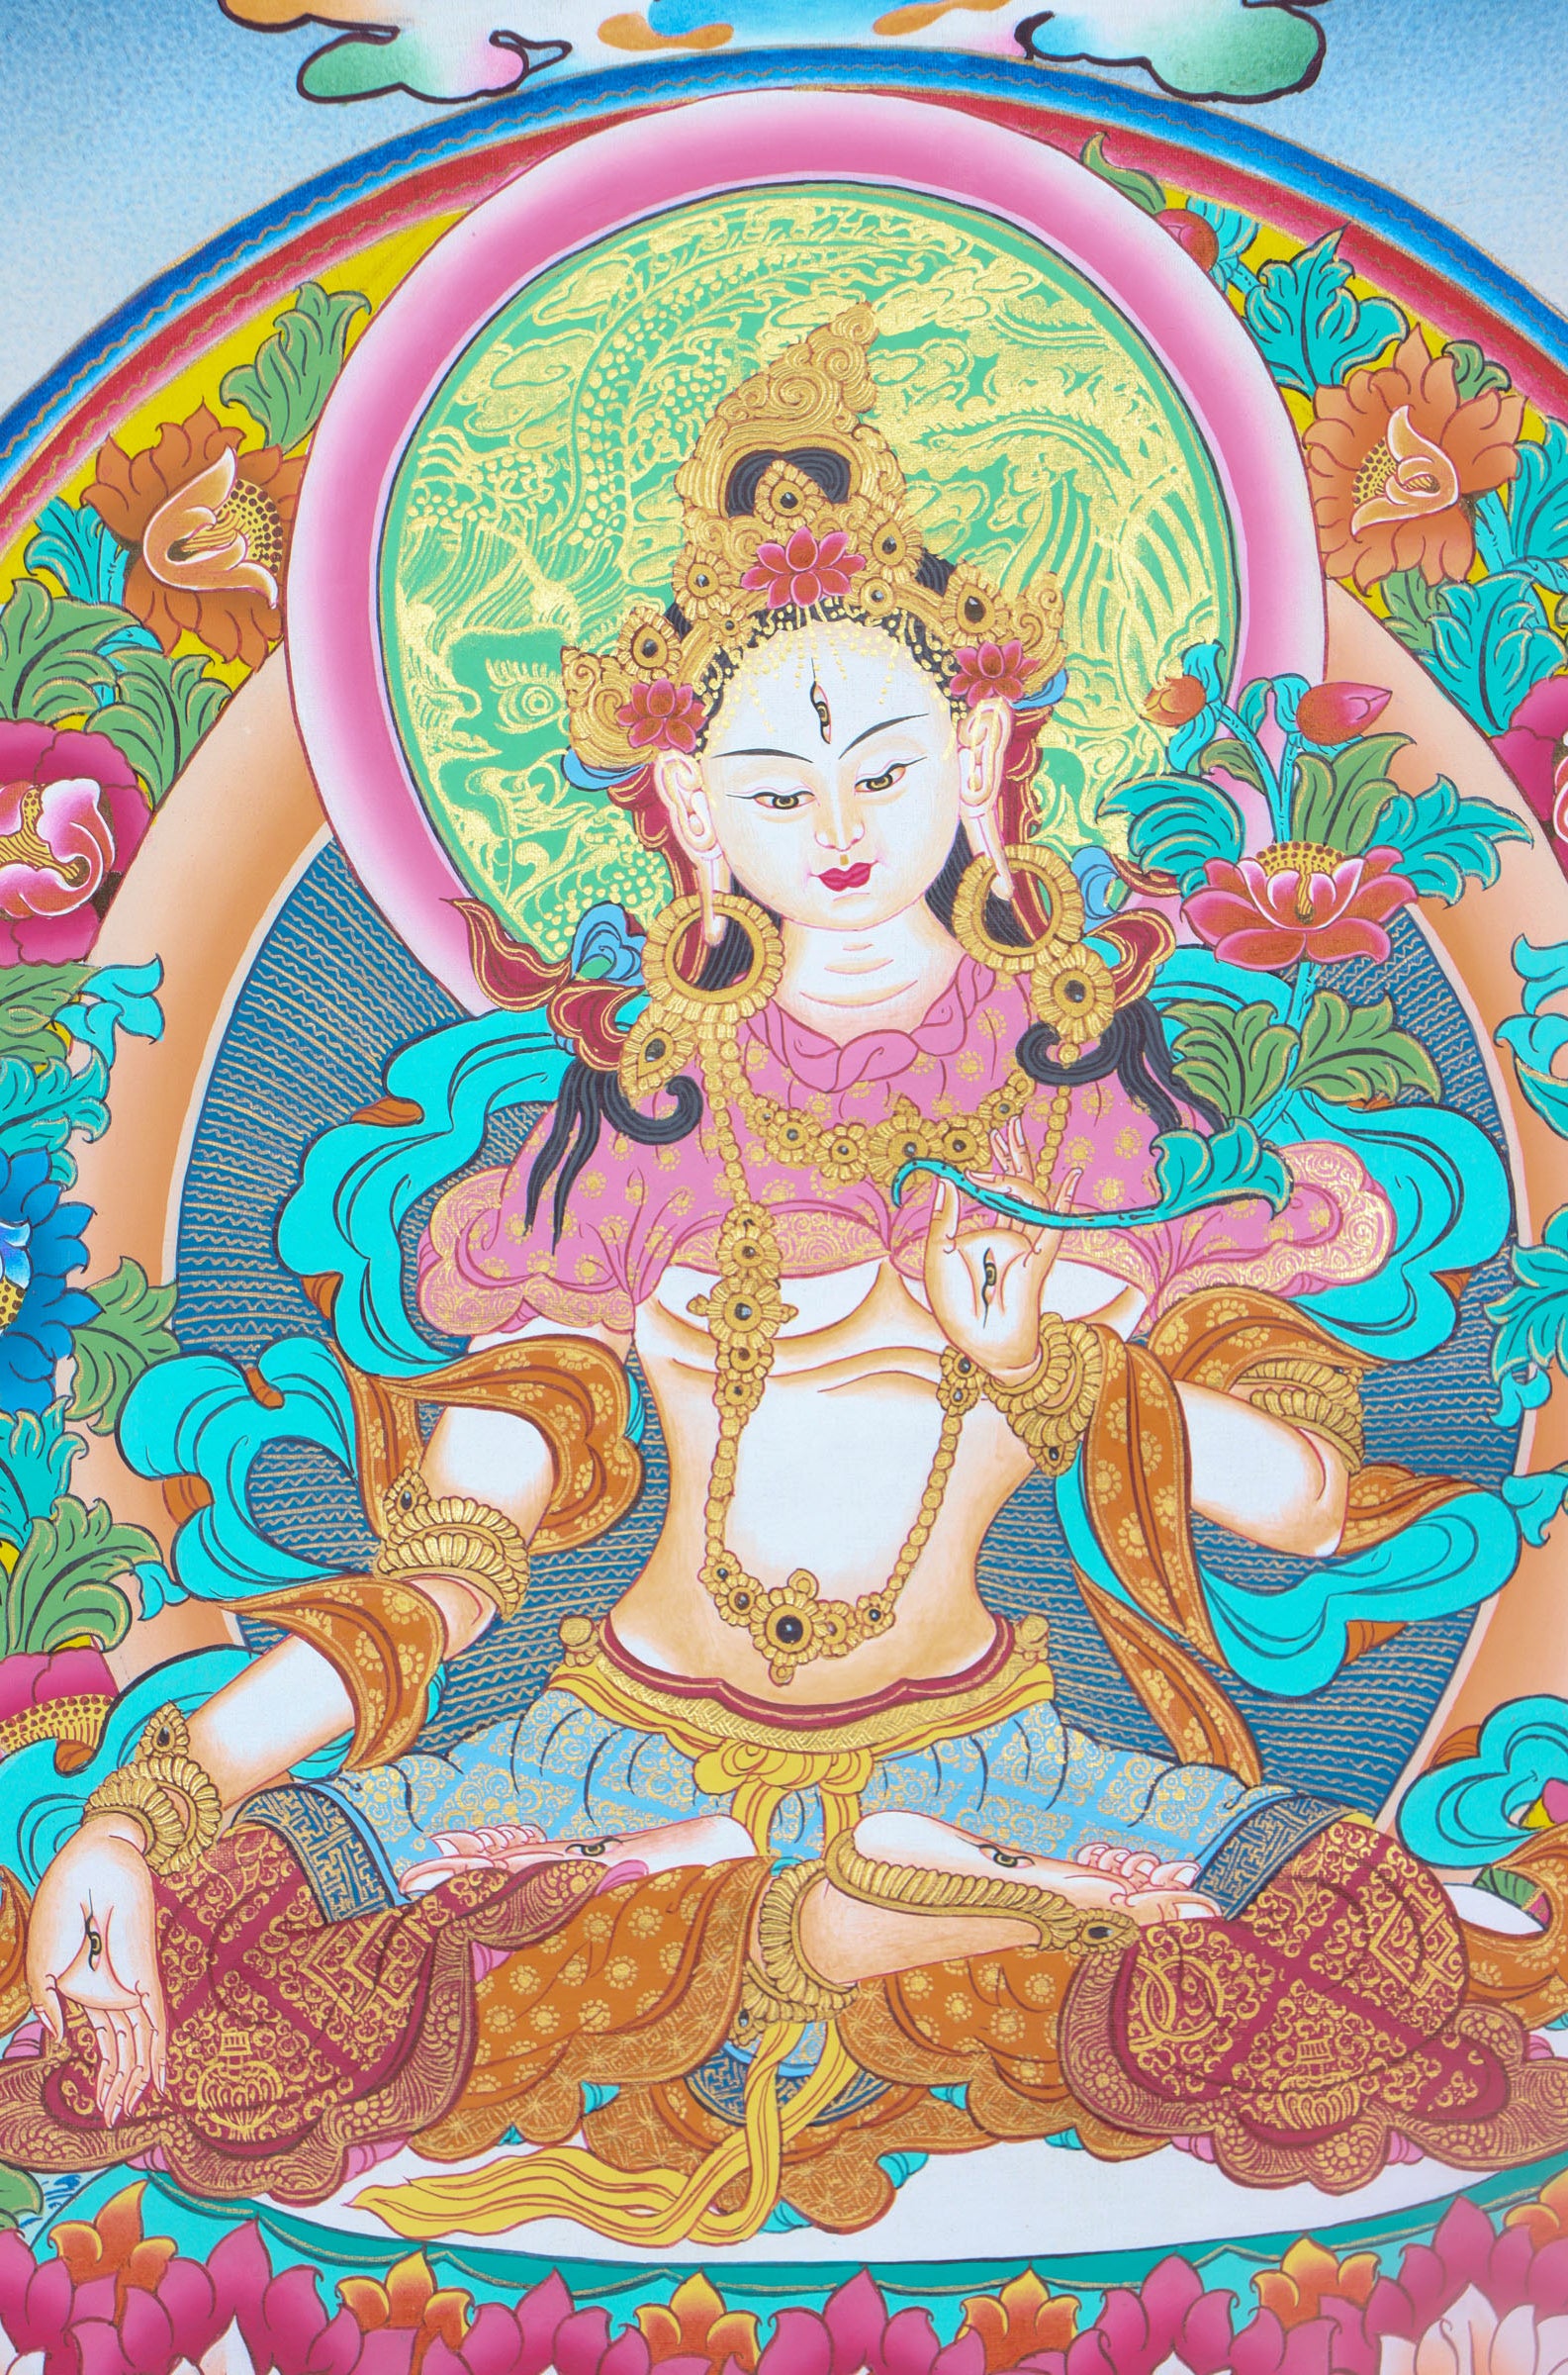 White Tara Thangka Painting - Buddhist Art